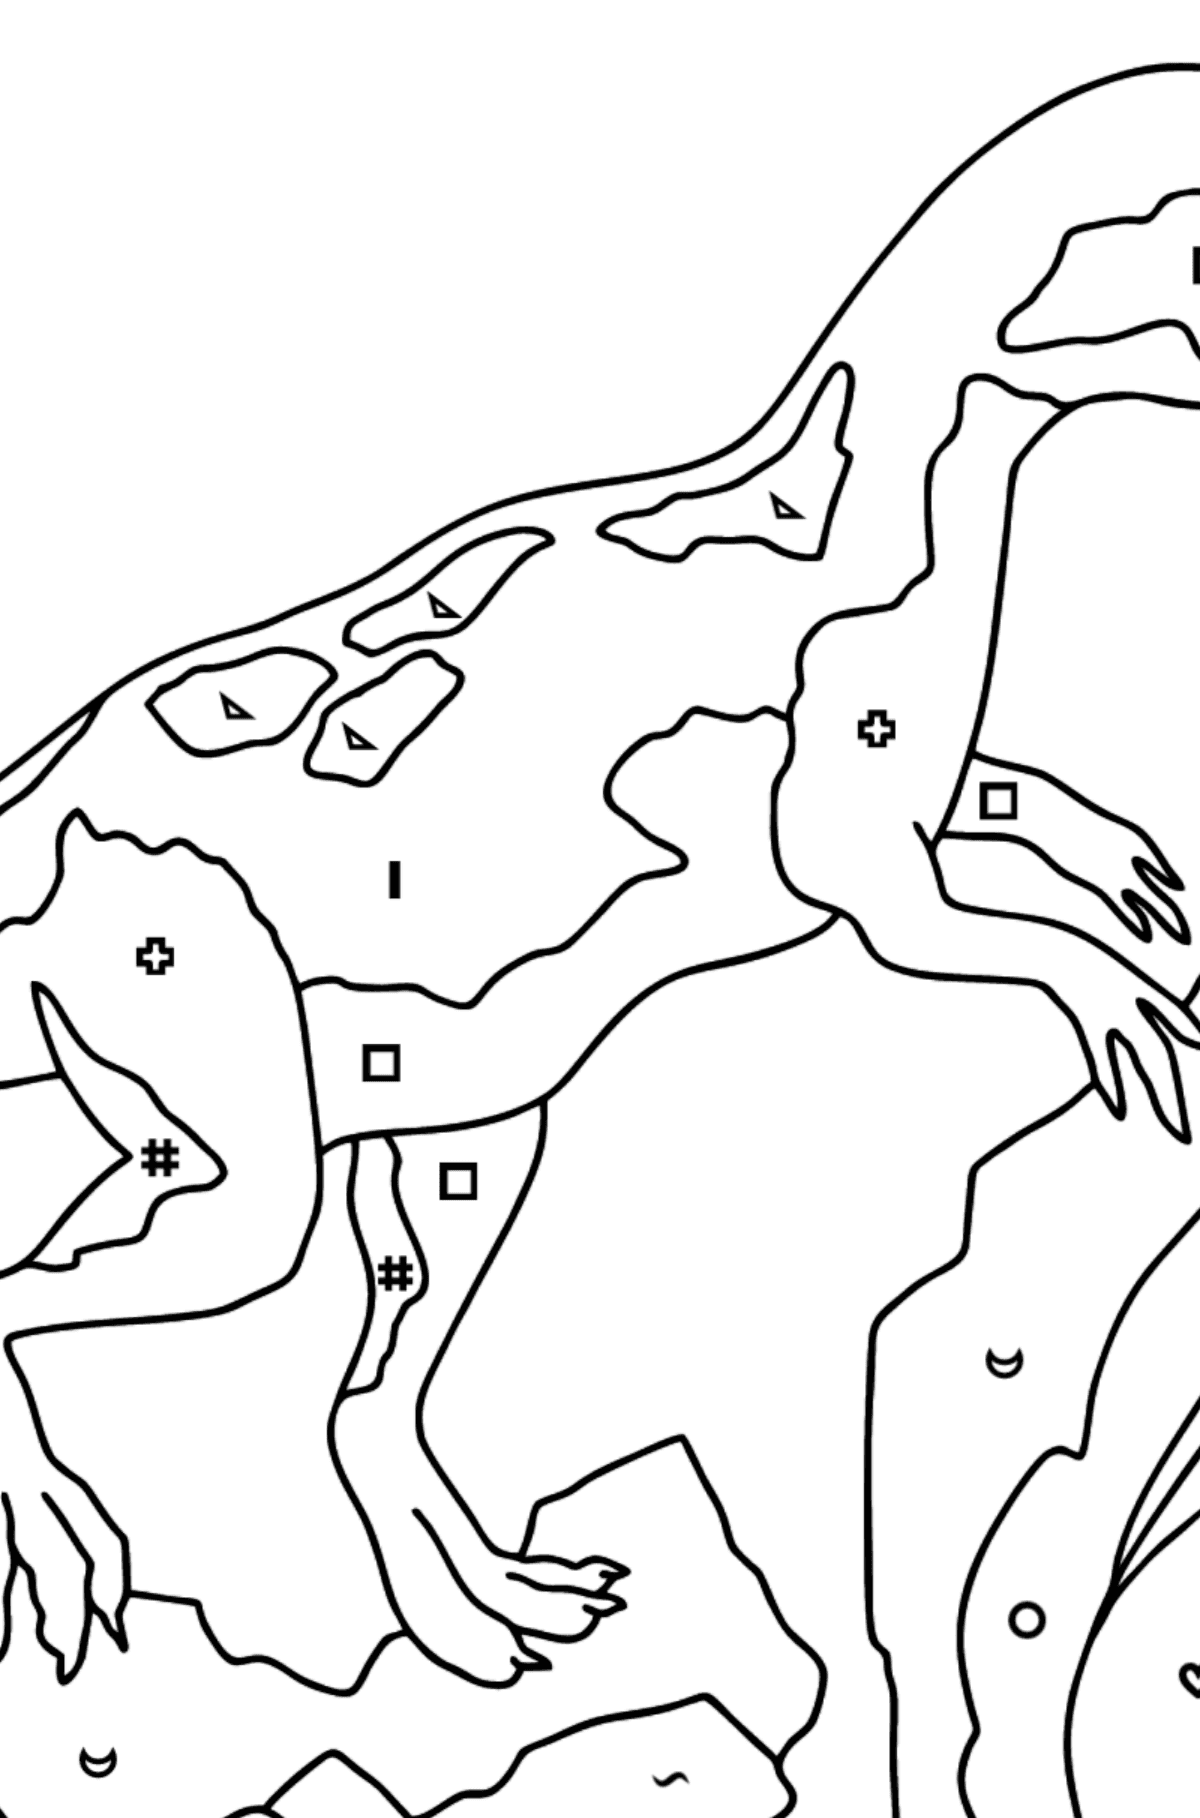 Dibujo para colorear de dinosaurio jurásico (difícil) - Colorear por Símbolos para Niños